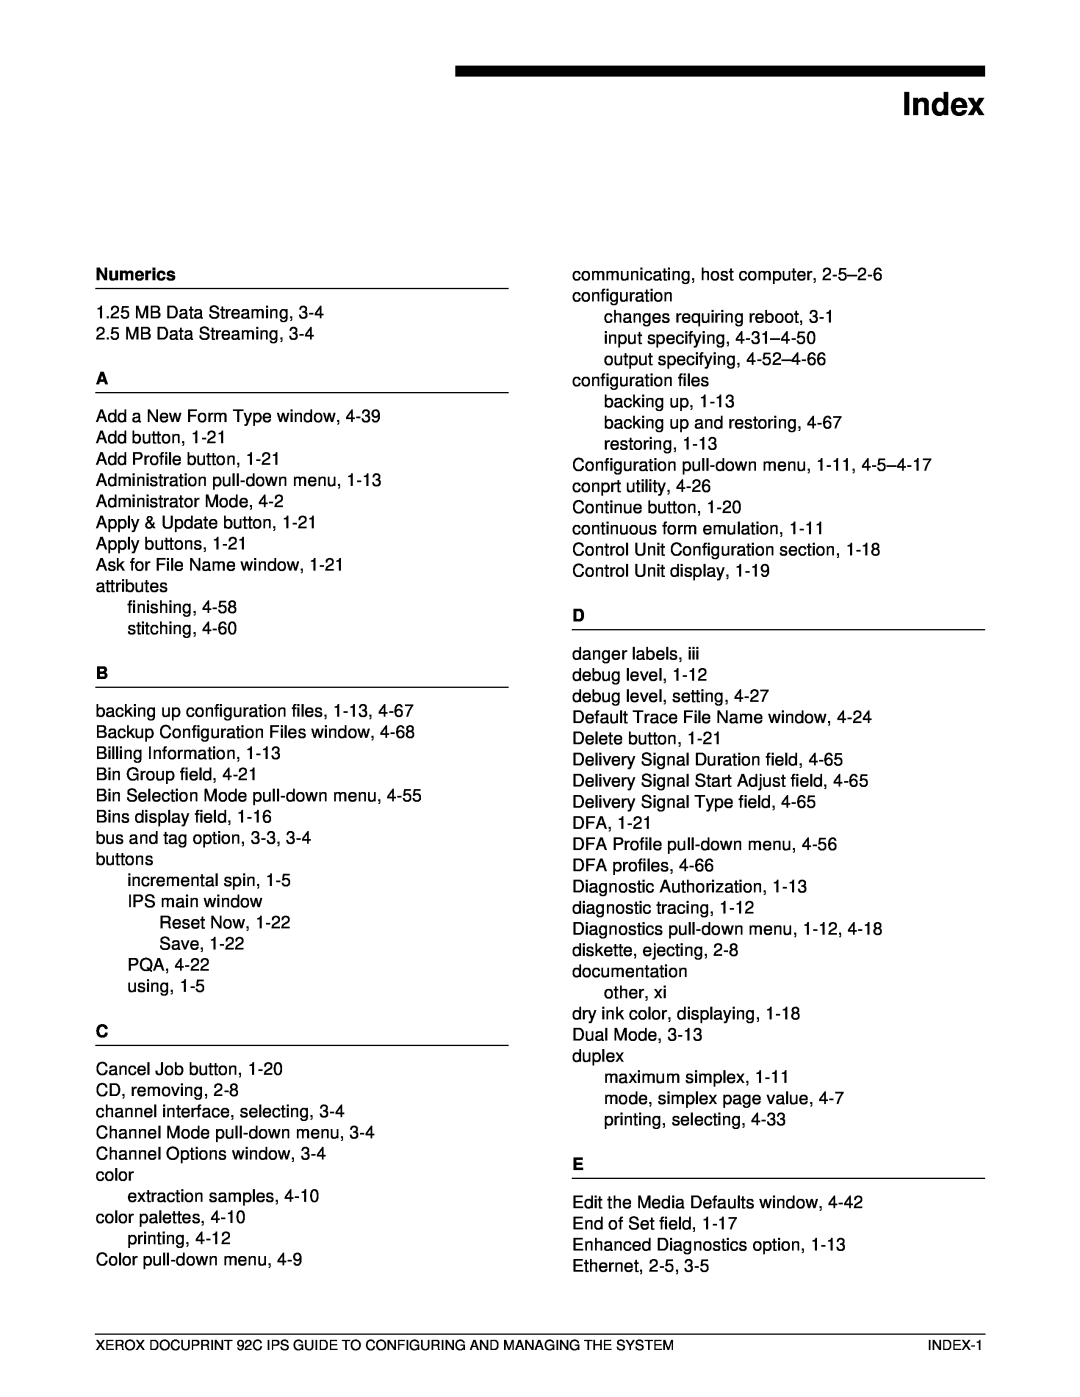 Xerox 92C IPS manual Index, Numerics 